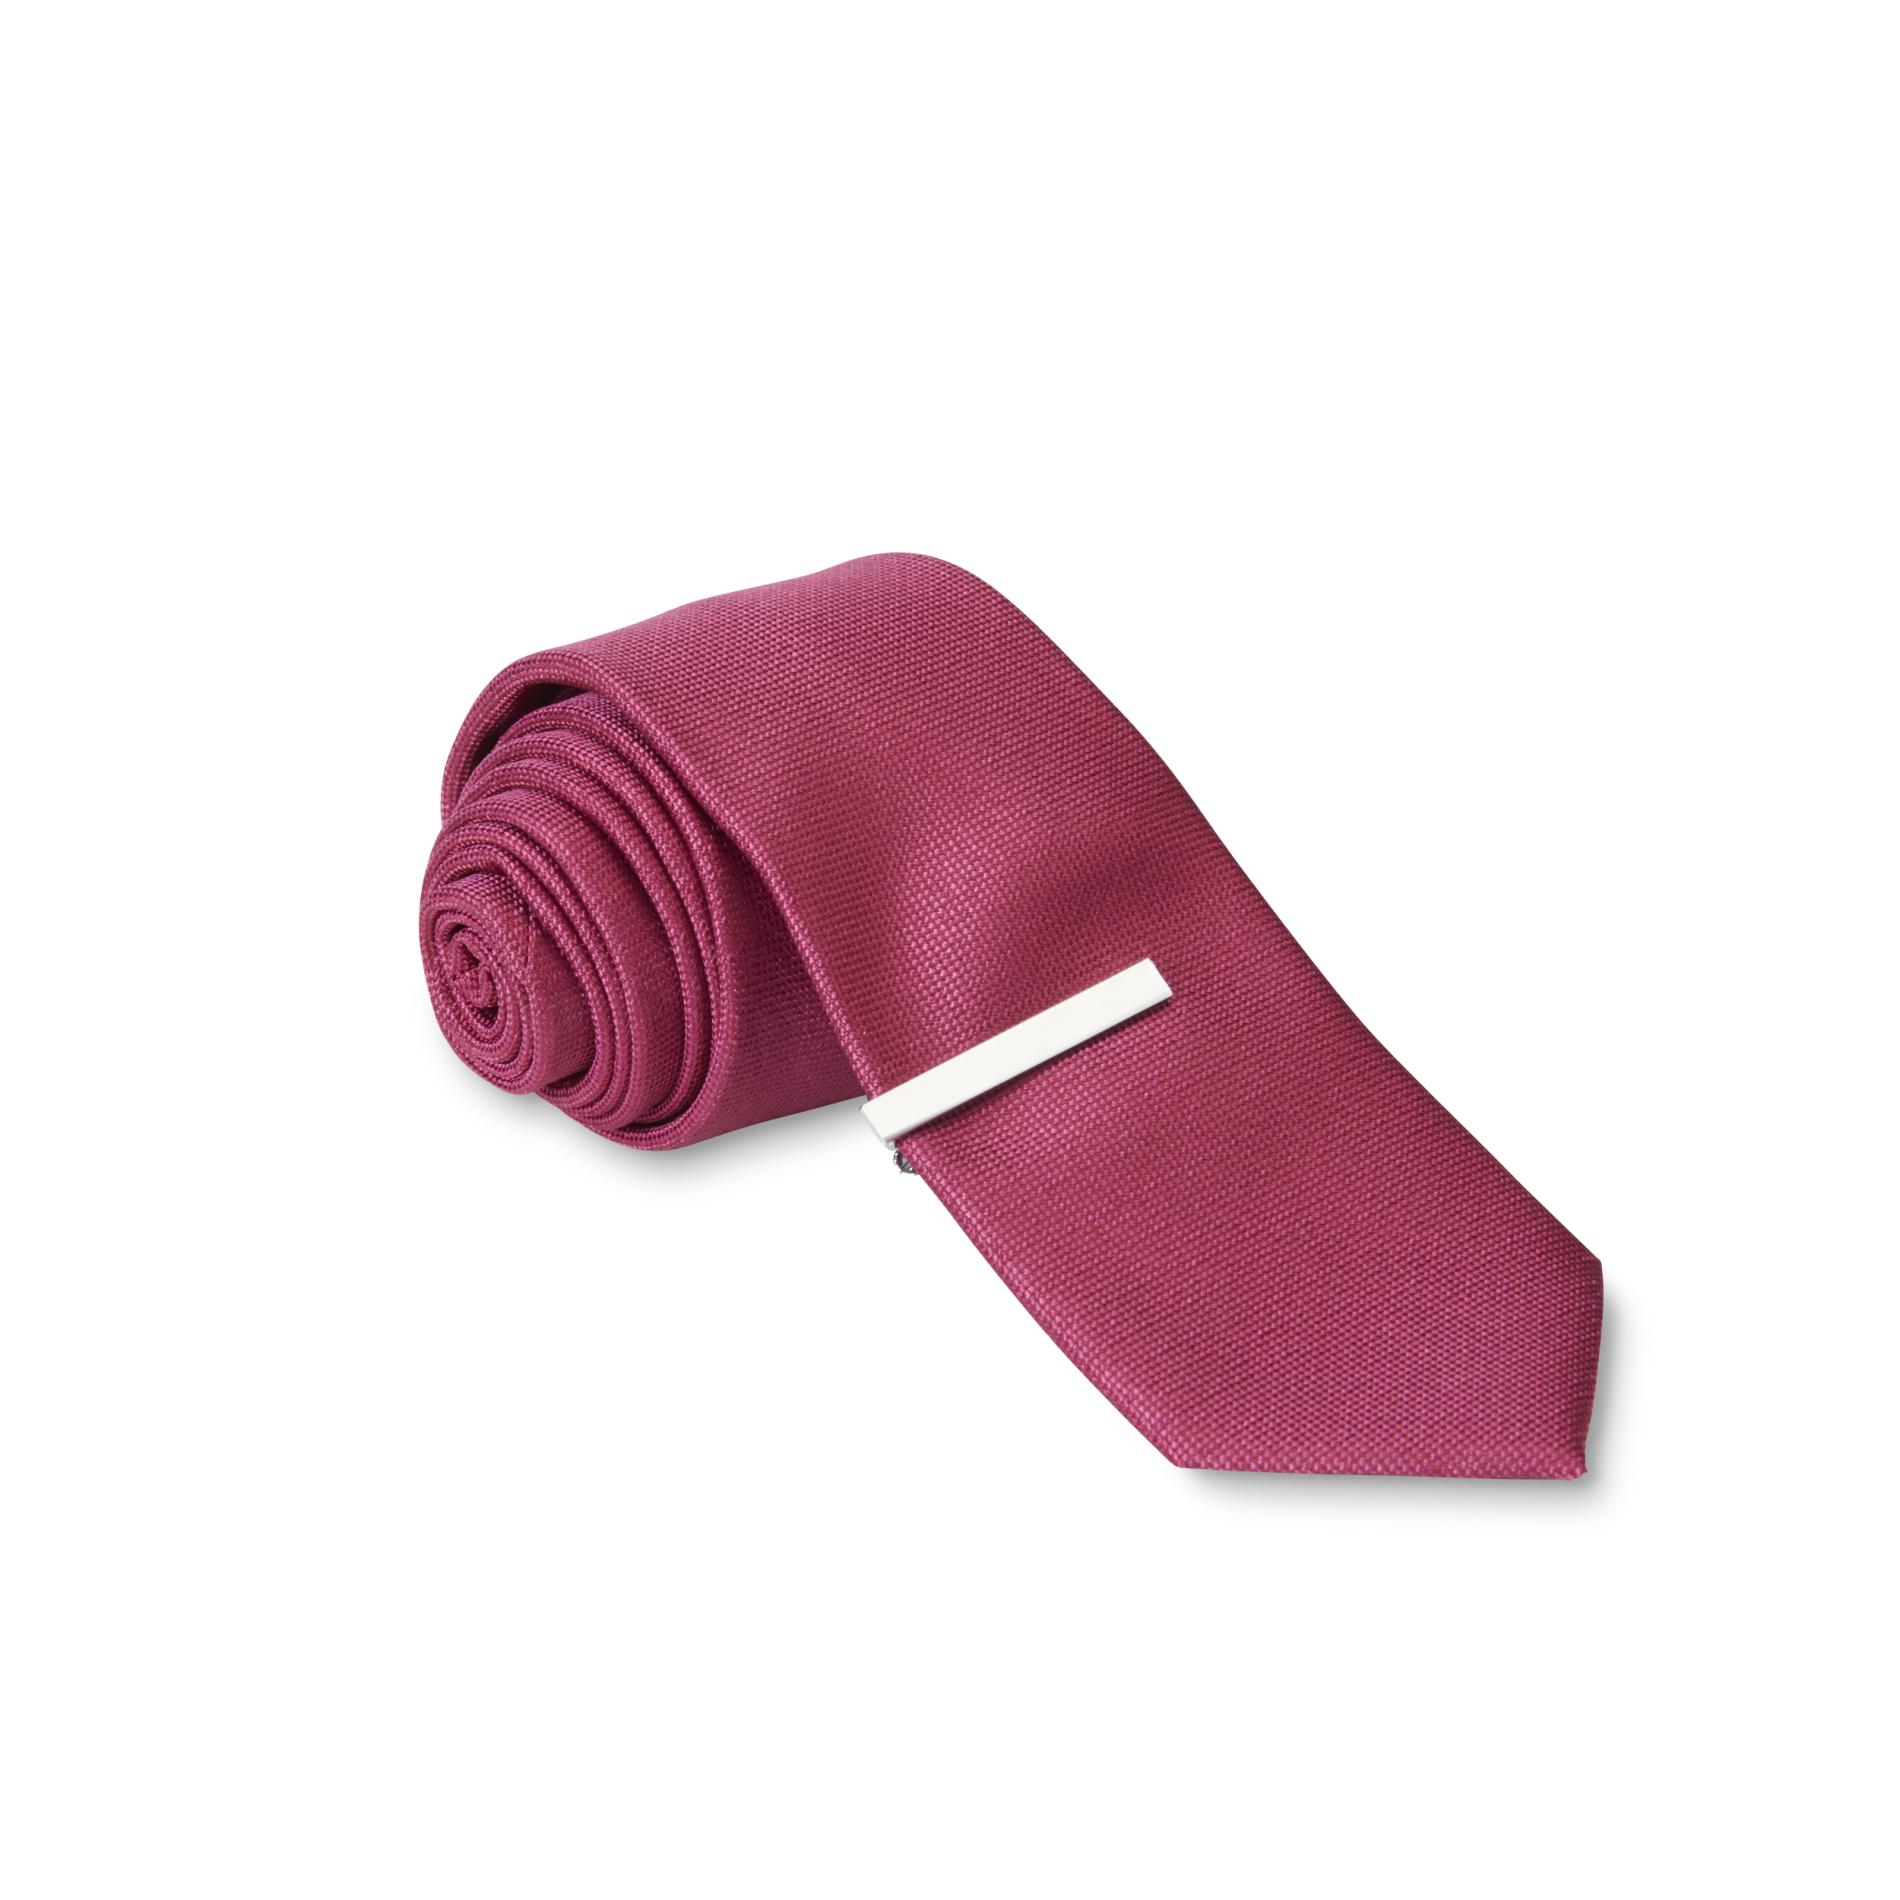 Structure Men's Necktie & Tie Bar - Solid